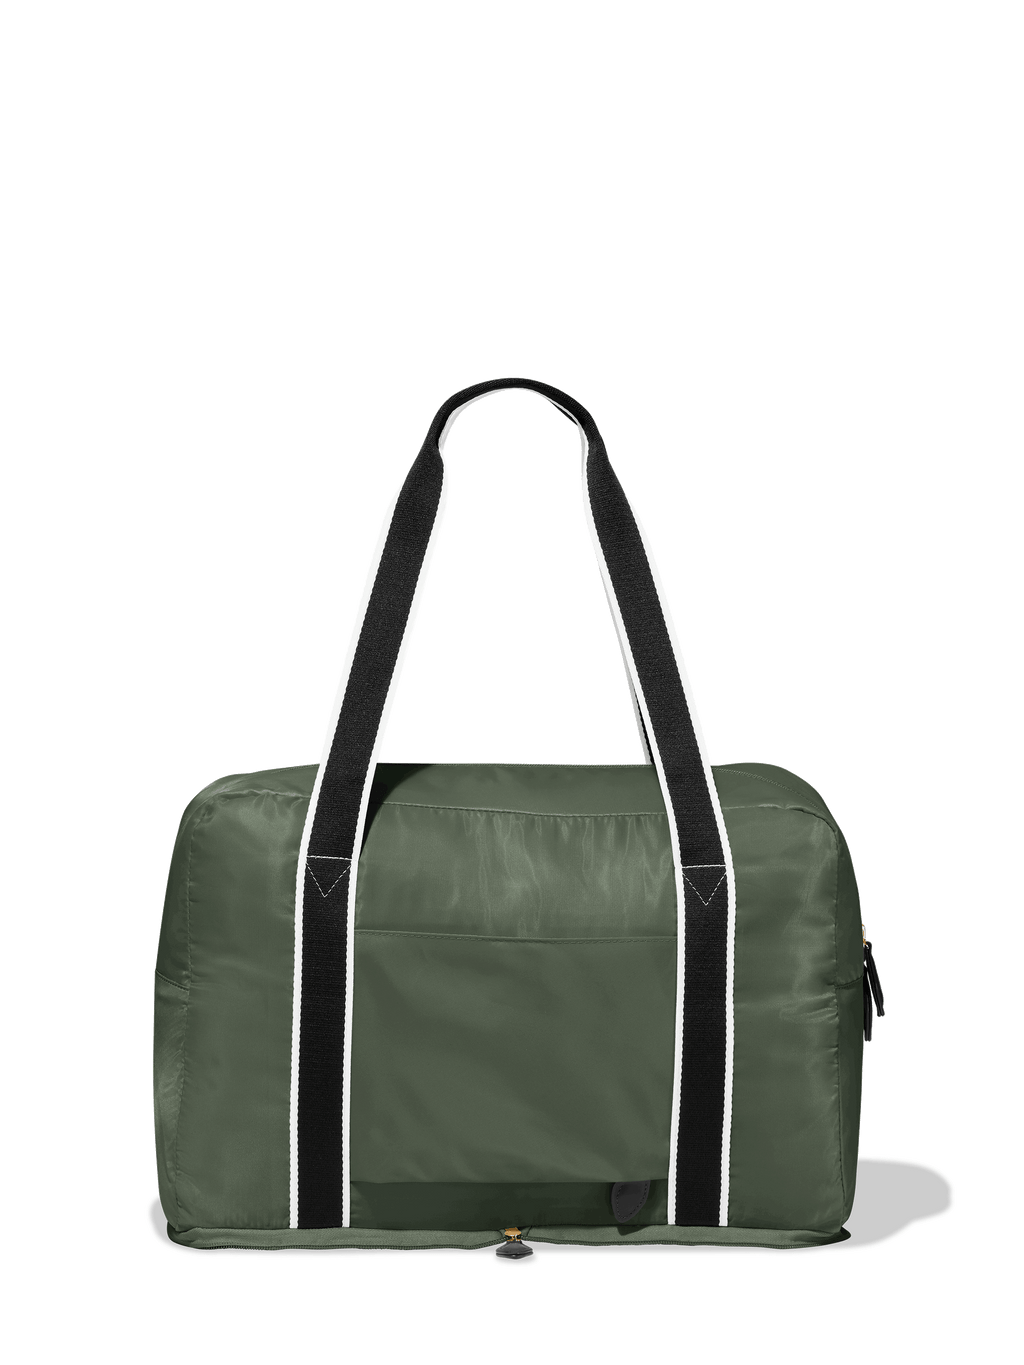 fashion Clear Duffle Bag Custom Travel Organizer Bag Personalized